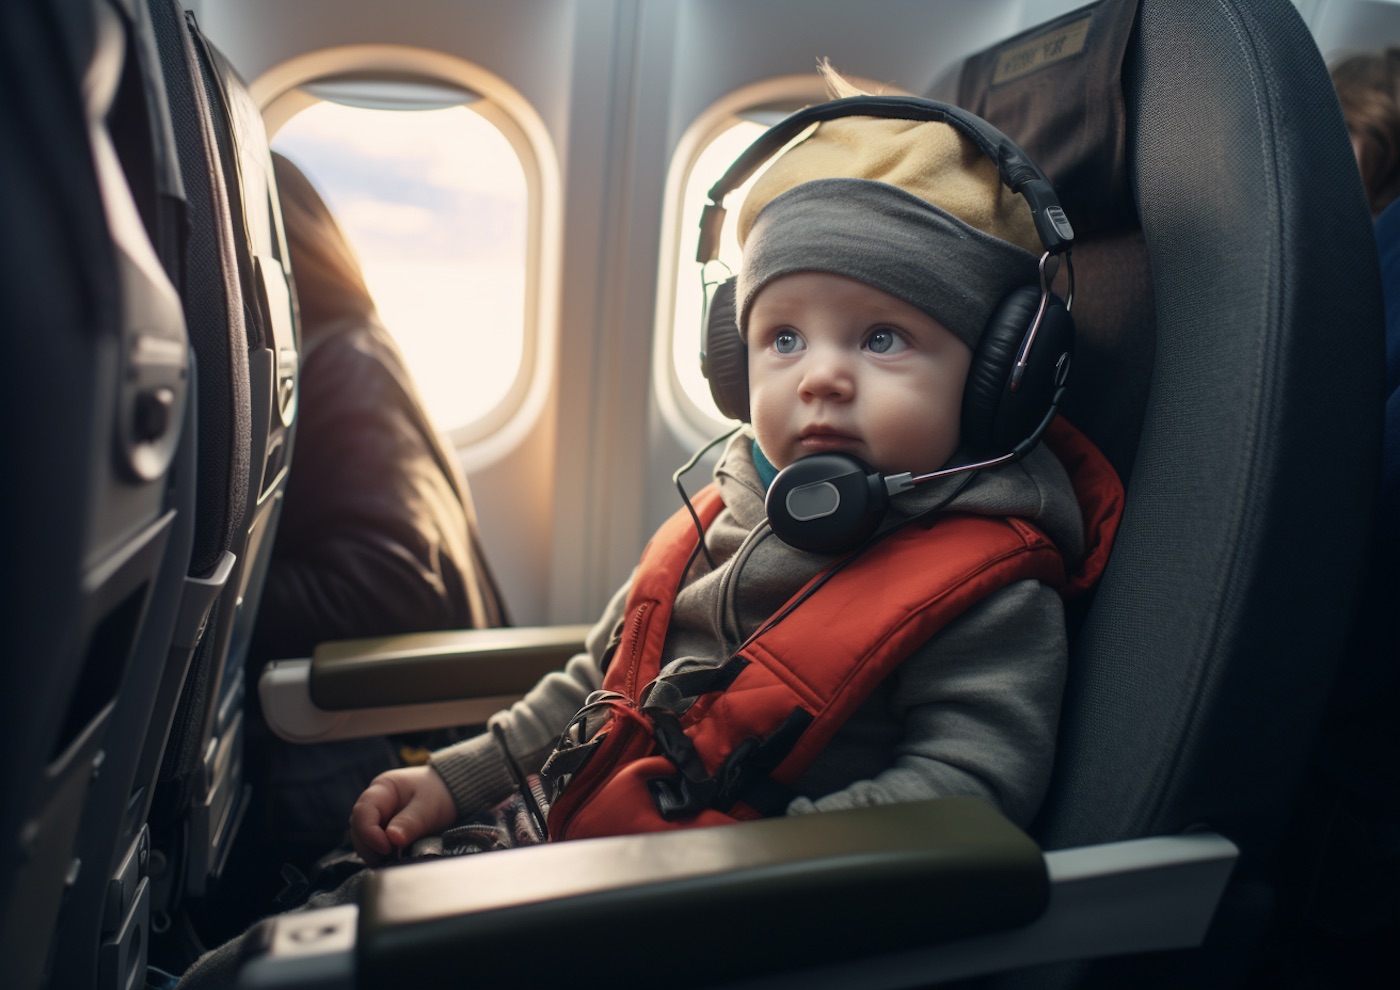 astuces voyage avion bébé 1 an